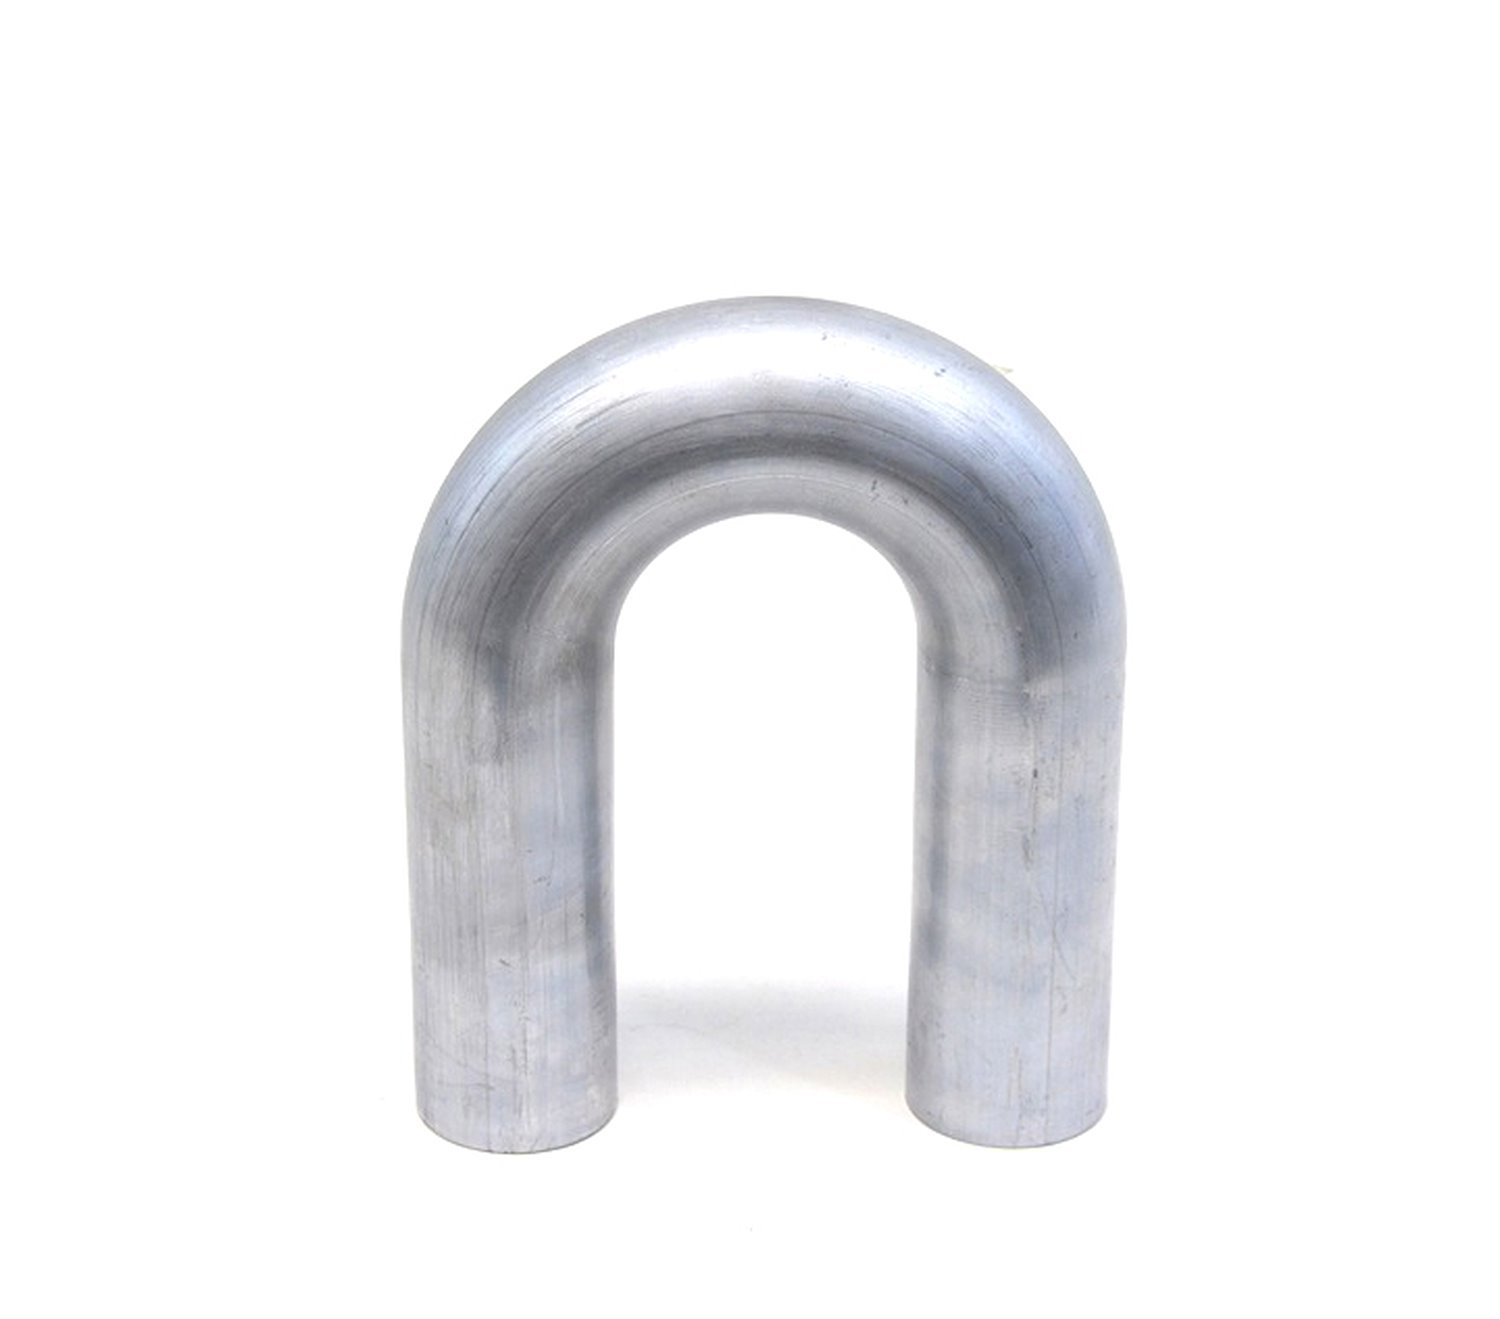 AT180-175-CLR-225 Aluminum Elbow Tube, 6061 Aluminum, 180-Degree U Bend Elbow Tubing, 1-3/4 in. OD, Tight Radius, 2-1/4 in. CLR